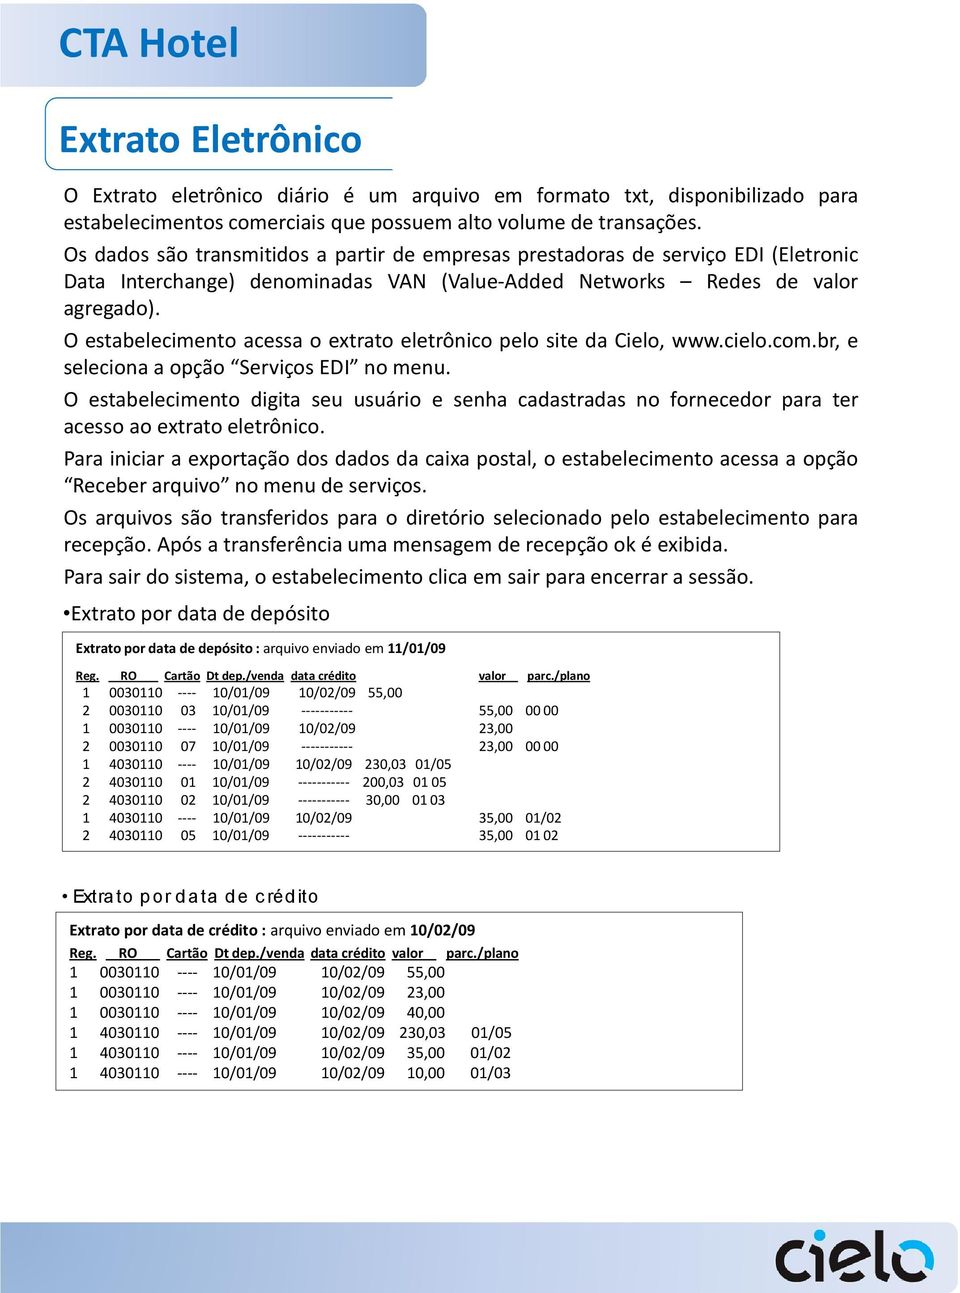 O estabelecimento acessa o extrato eletrônico pelo site da Cielo, www.cielo.com.br, e seleciona a opção Serviços EDI no menu.